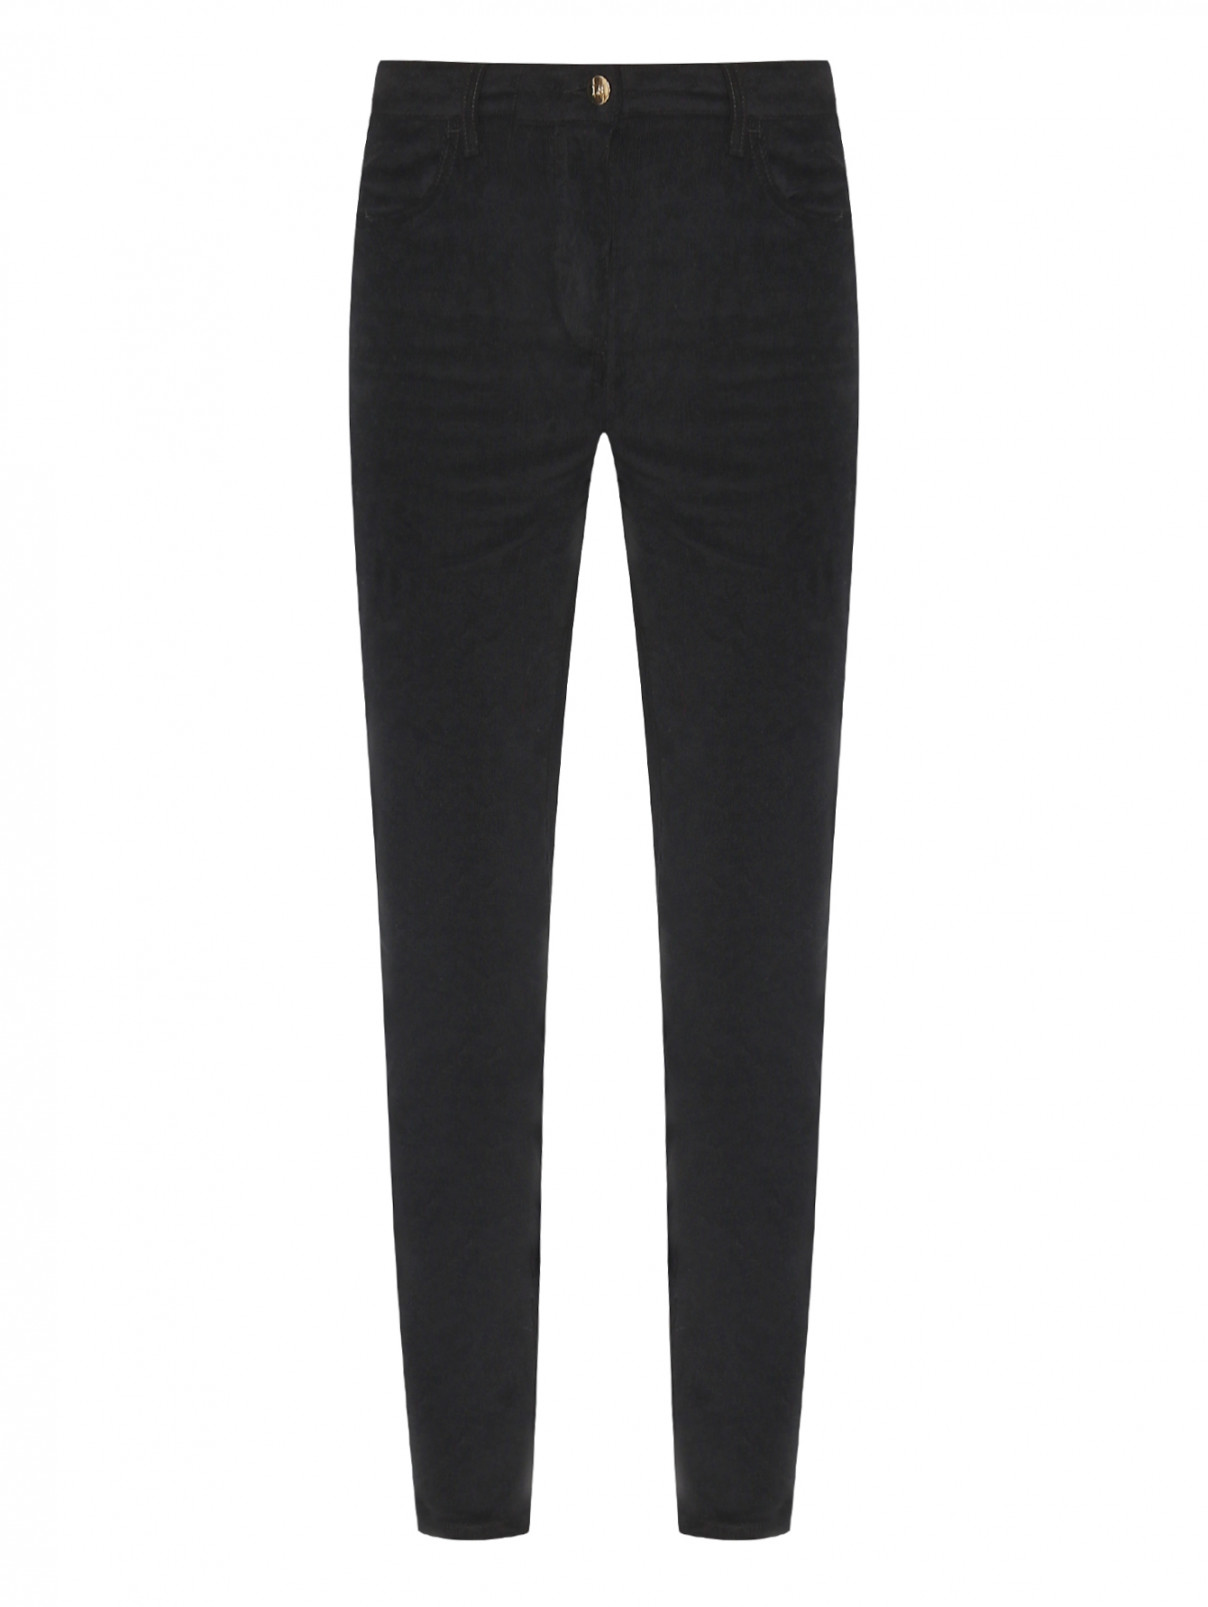 Вельветовые брюки из хлопка Luisa Spagnoli  –  Общий вид  – Цвет:  Черный